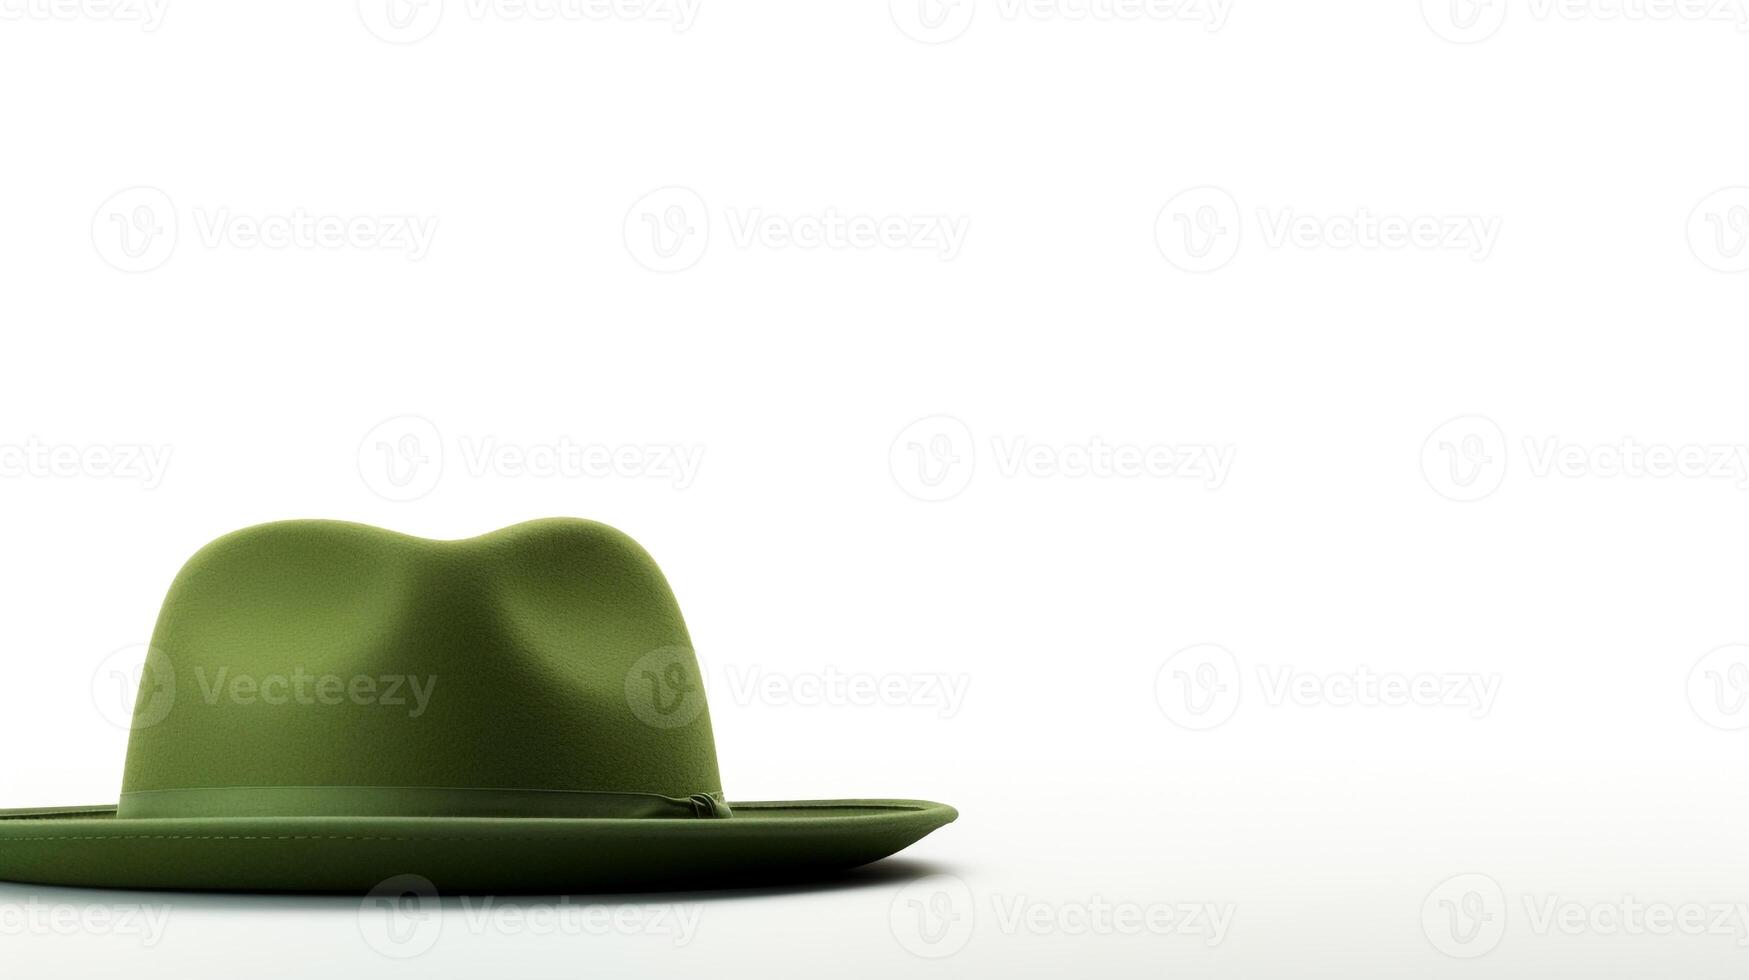 ai gerado foto do verde Panamá chapéu isolado em branco fundo. ai gerado